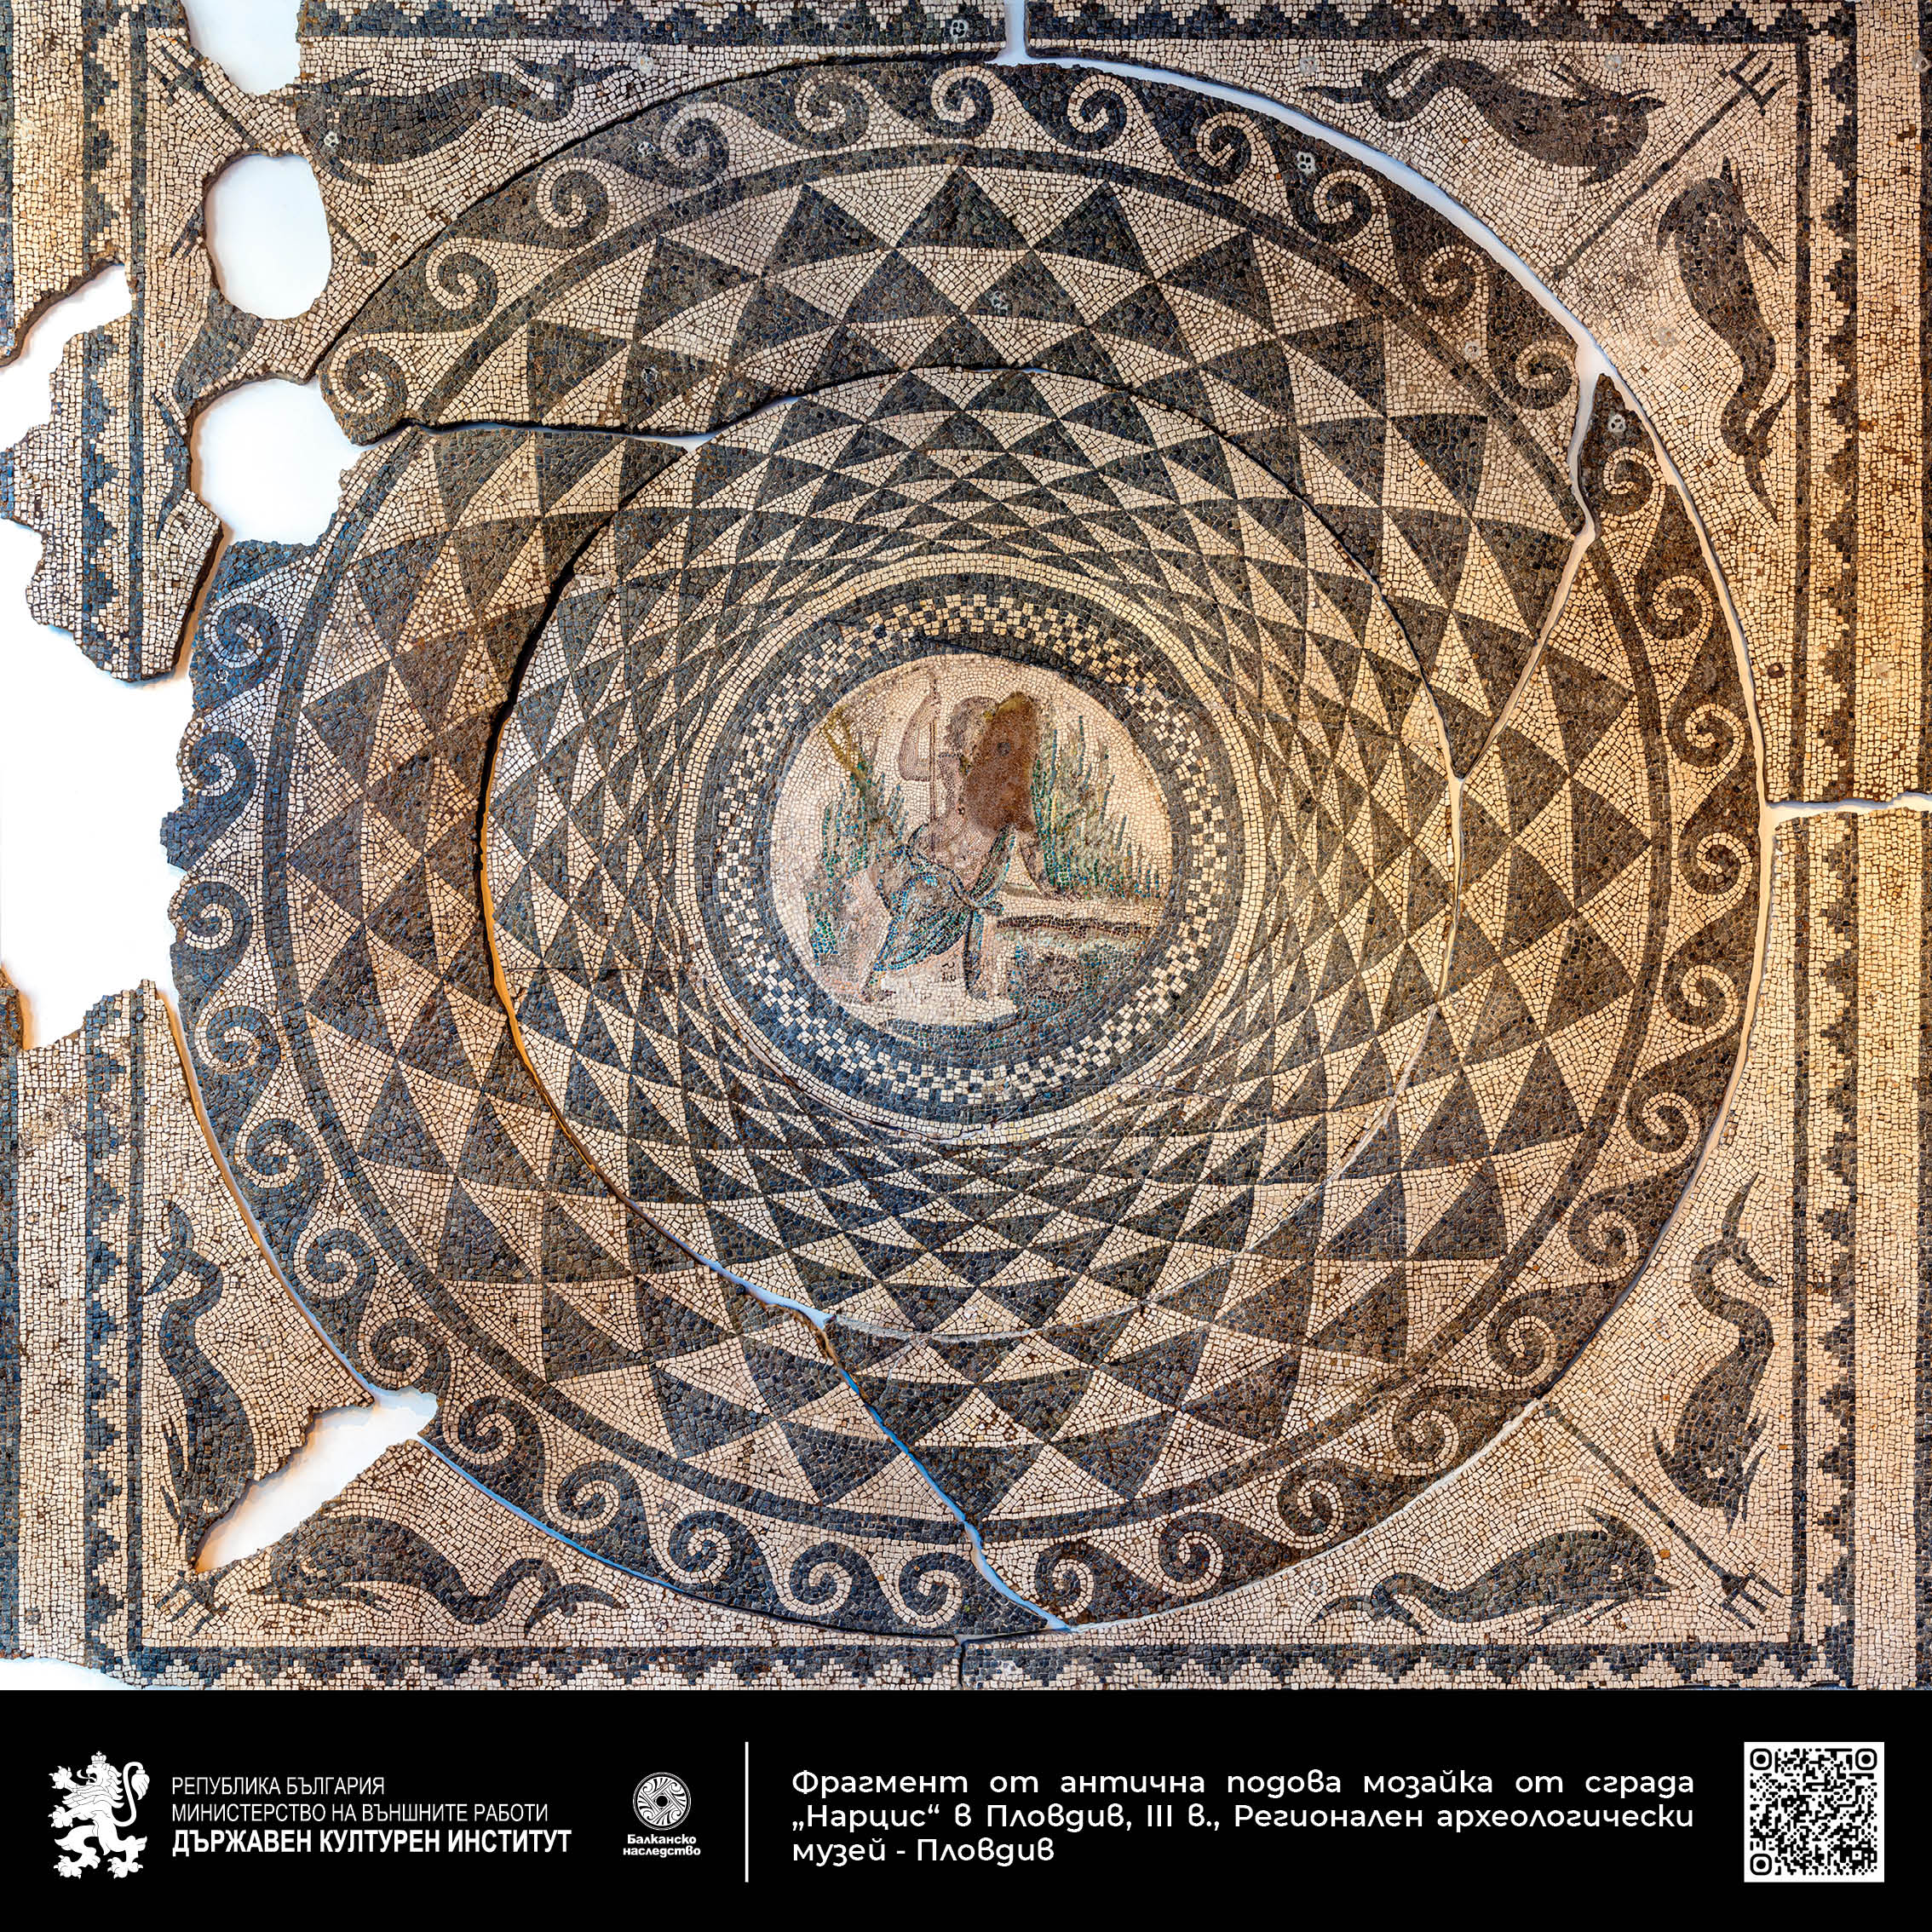 Фрагмент от антична подова мозайка от сграда „Нарцис“ в Пловдив, III в., Регионален археологически музей - Пловдив